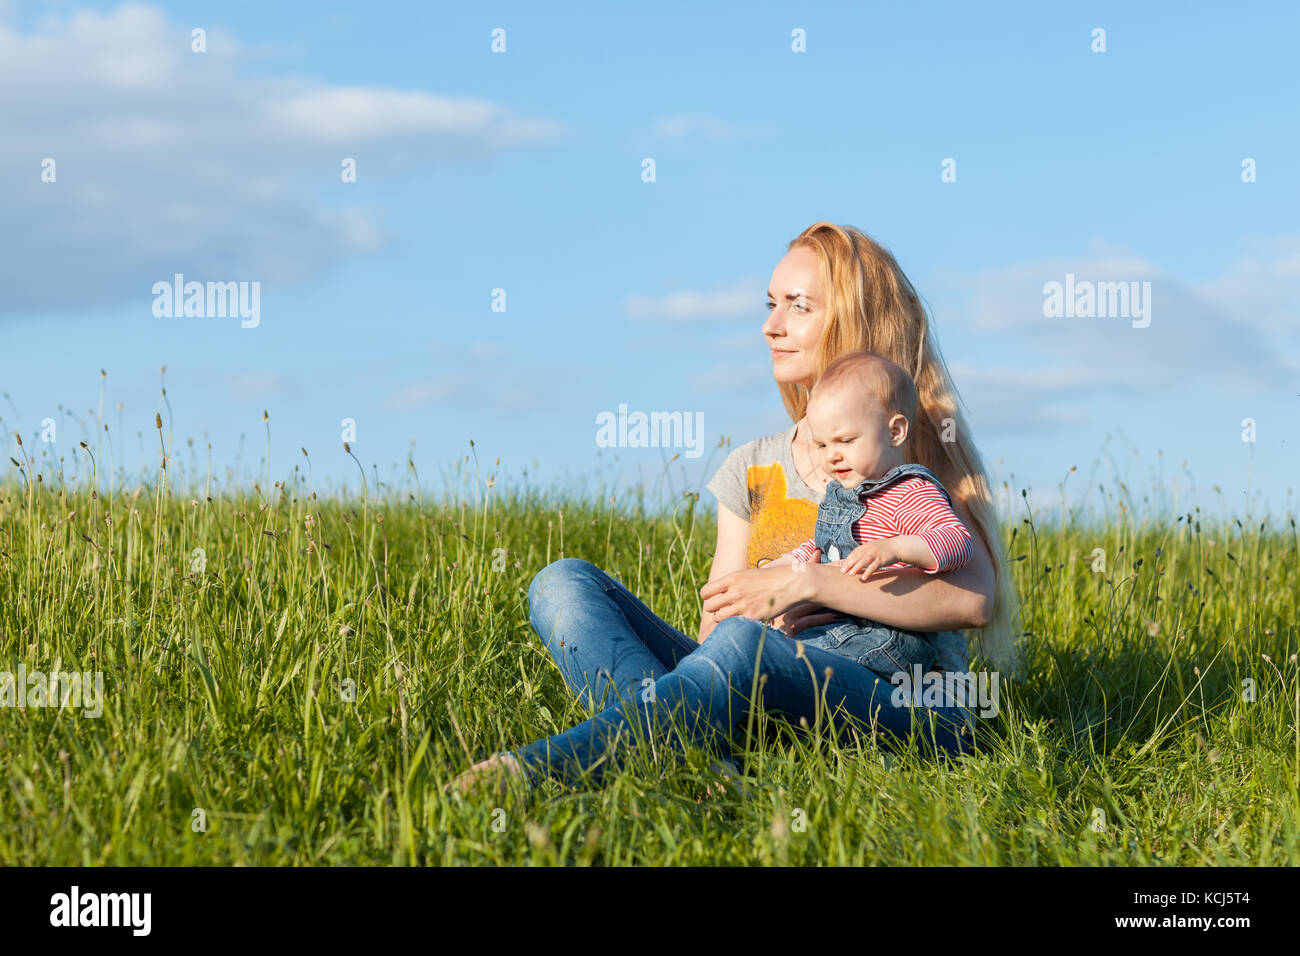 Jeune mère assise dans l'herbe et tenant un enfant Banque D'Images